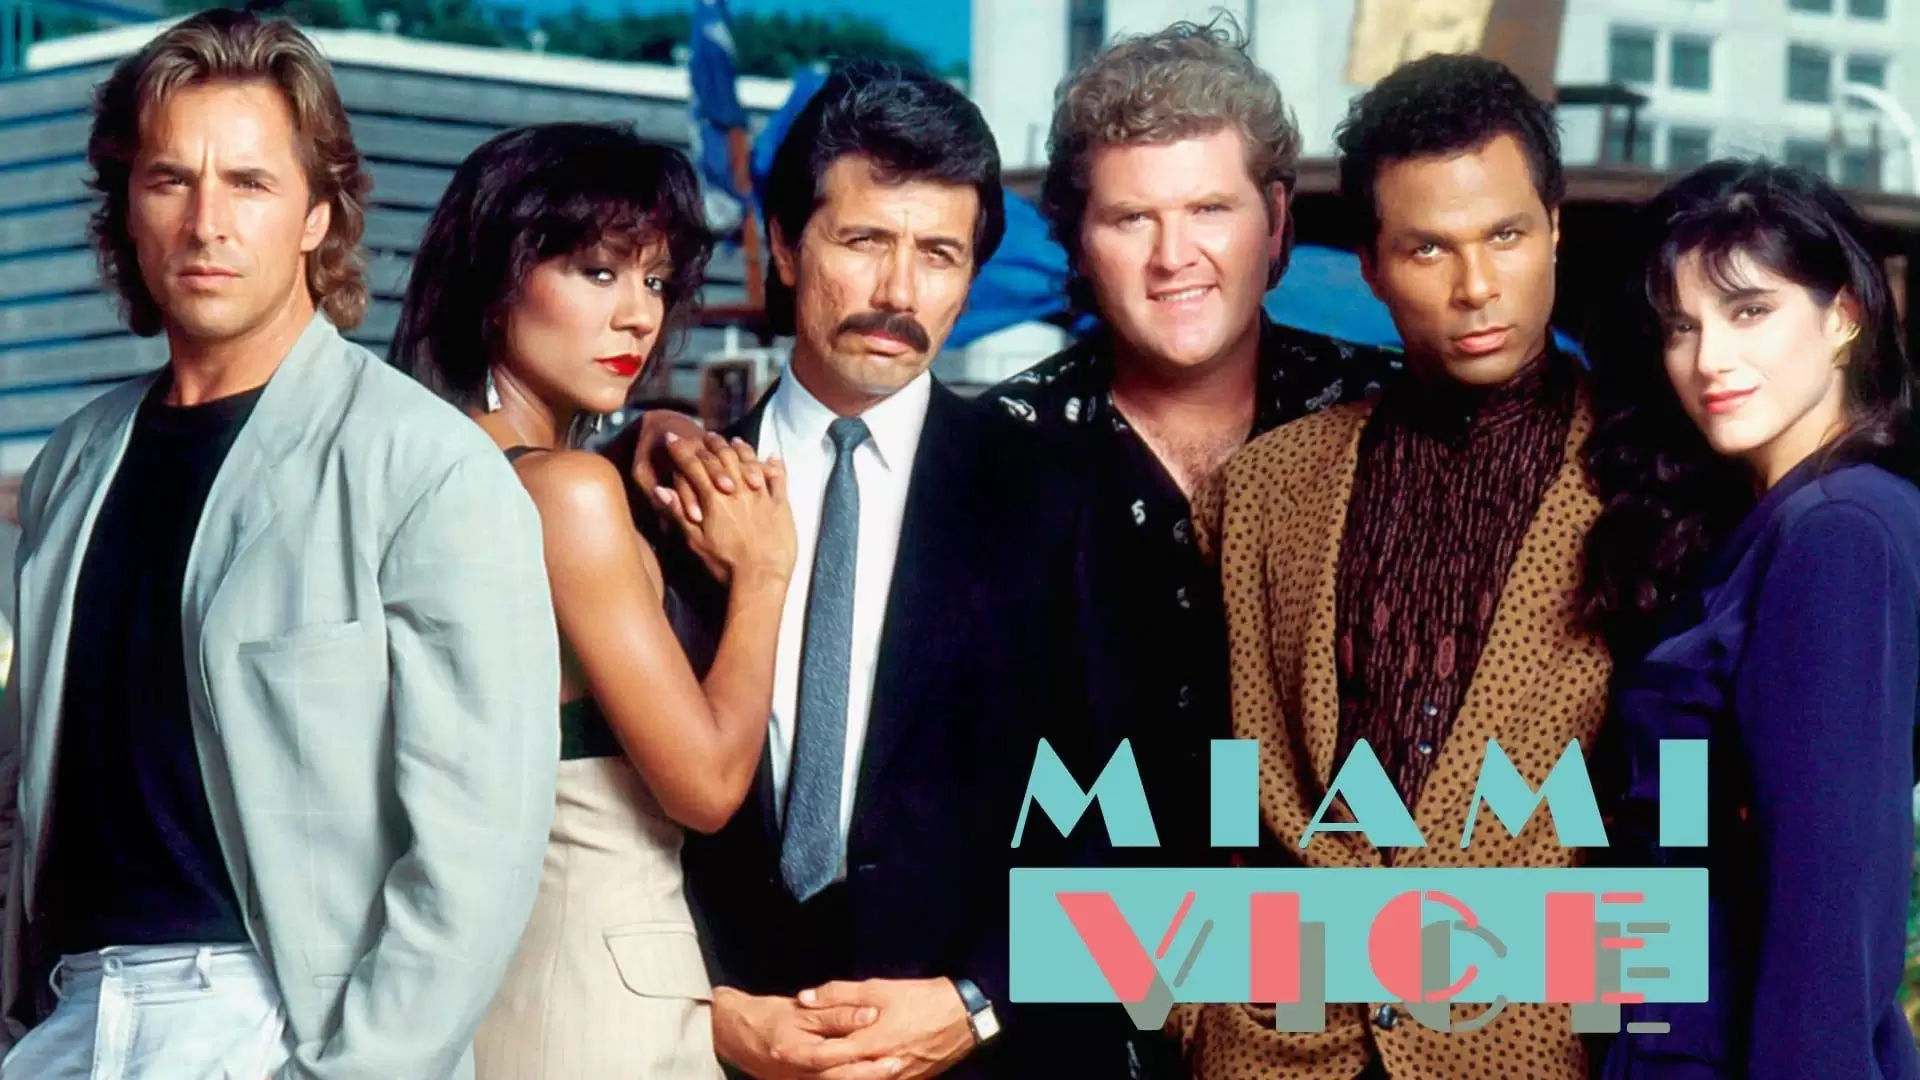 دانلود سریال Miami Vice 1984